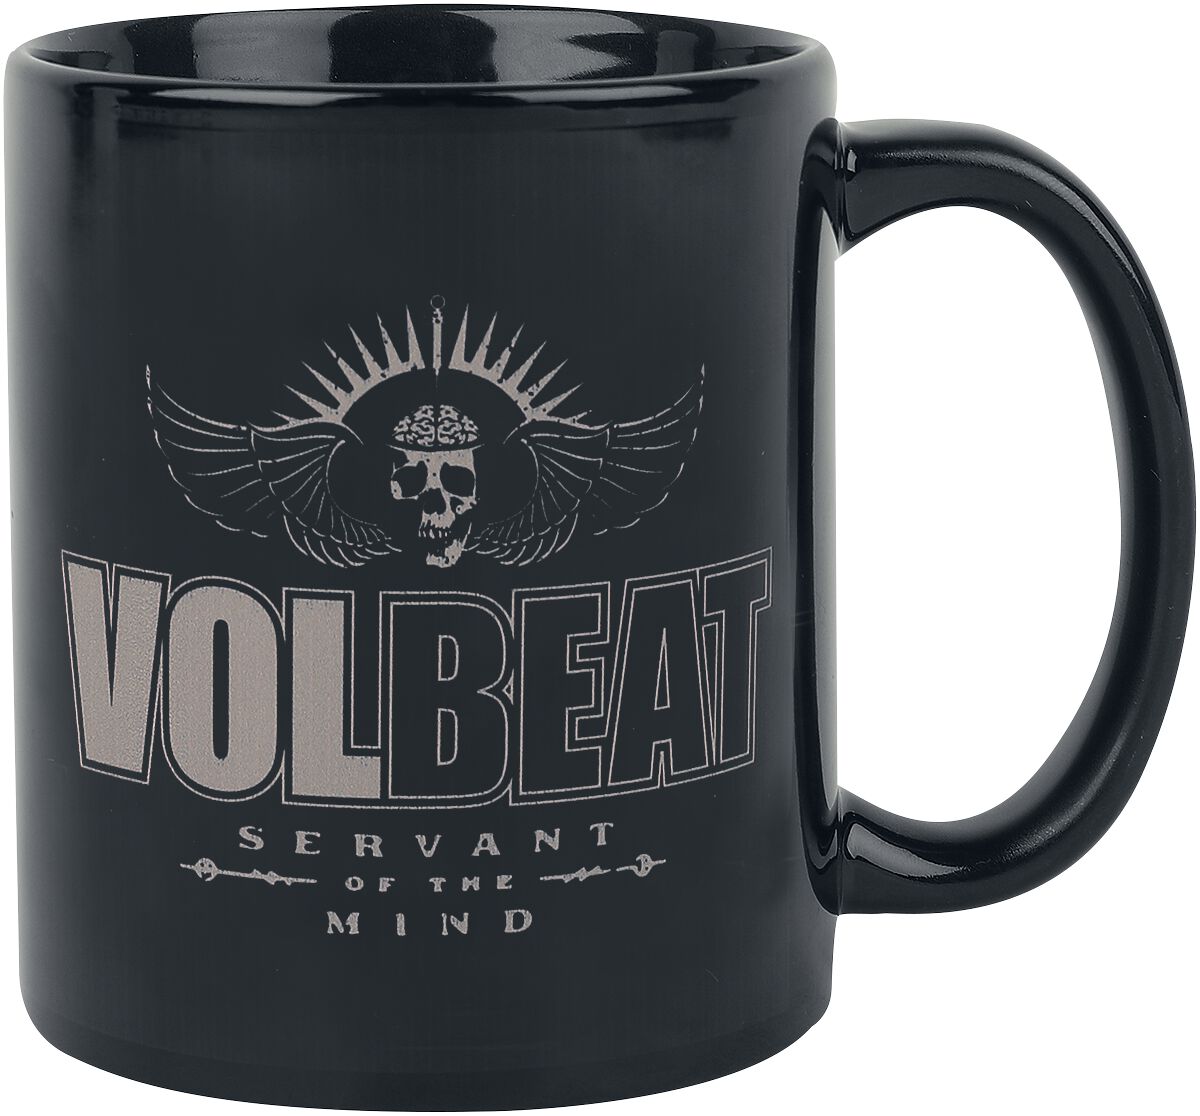 Volbeat Servant of the mind - Tasse Mug black